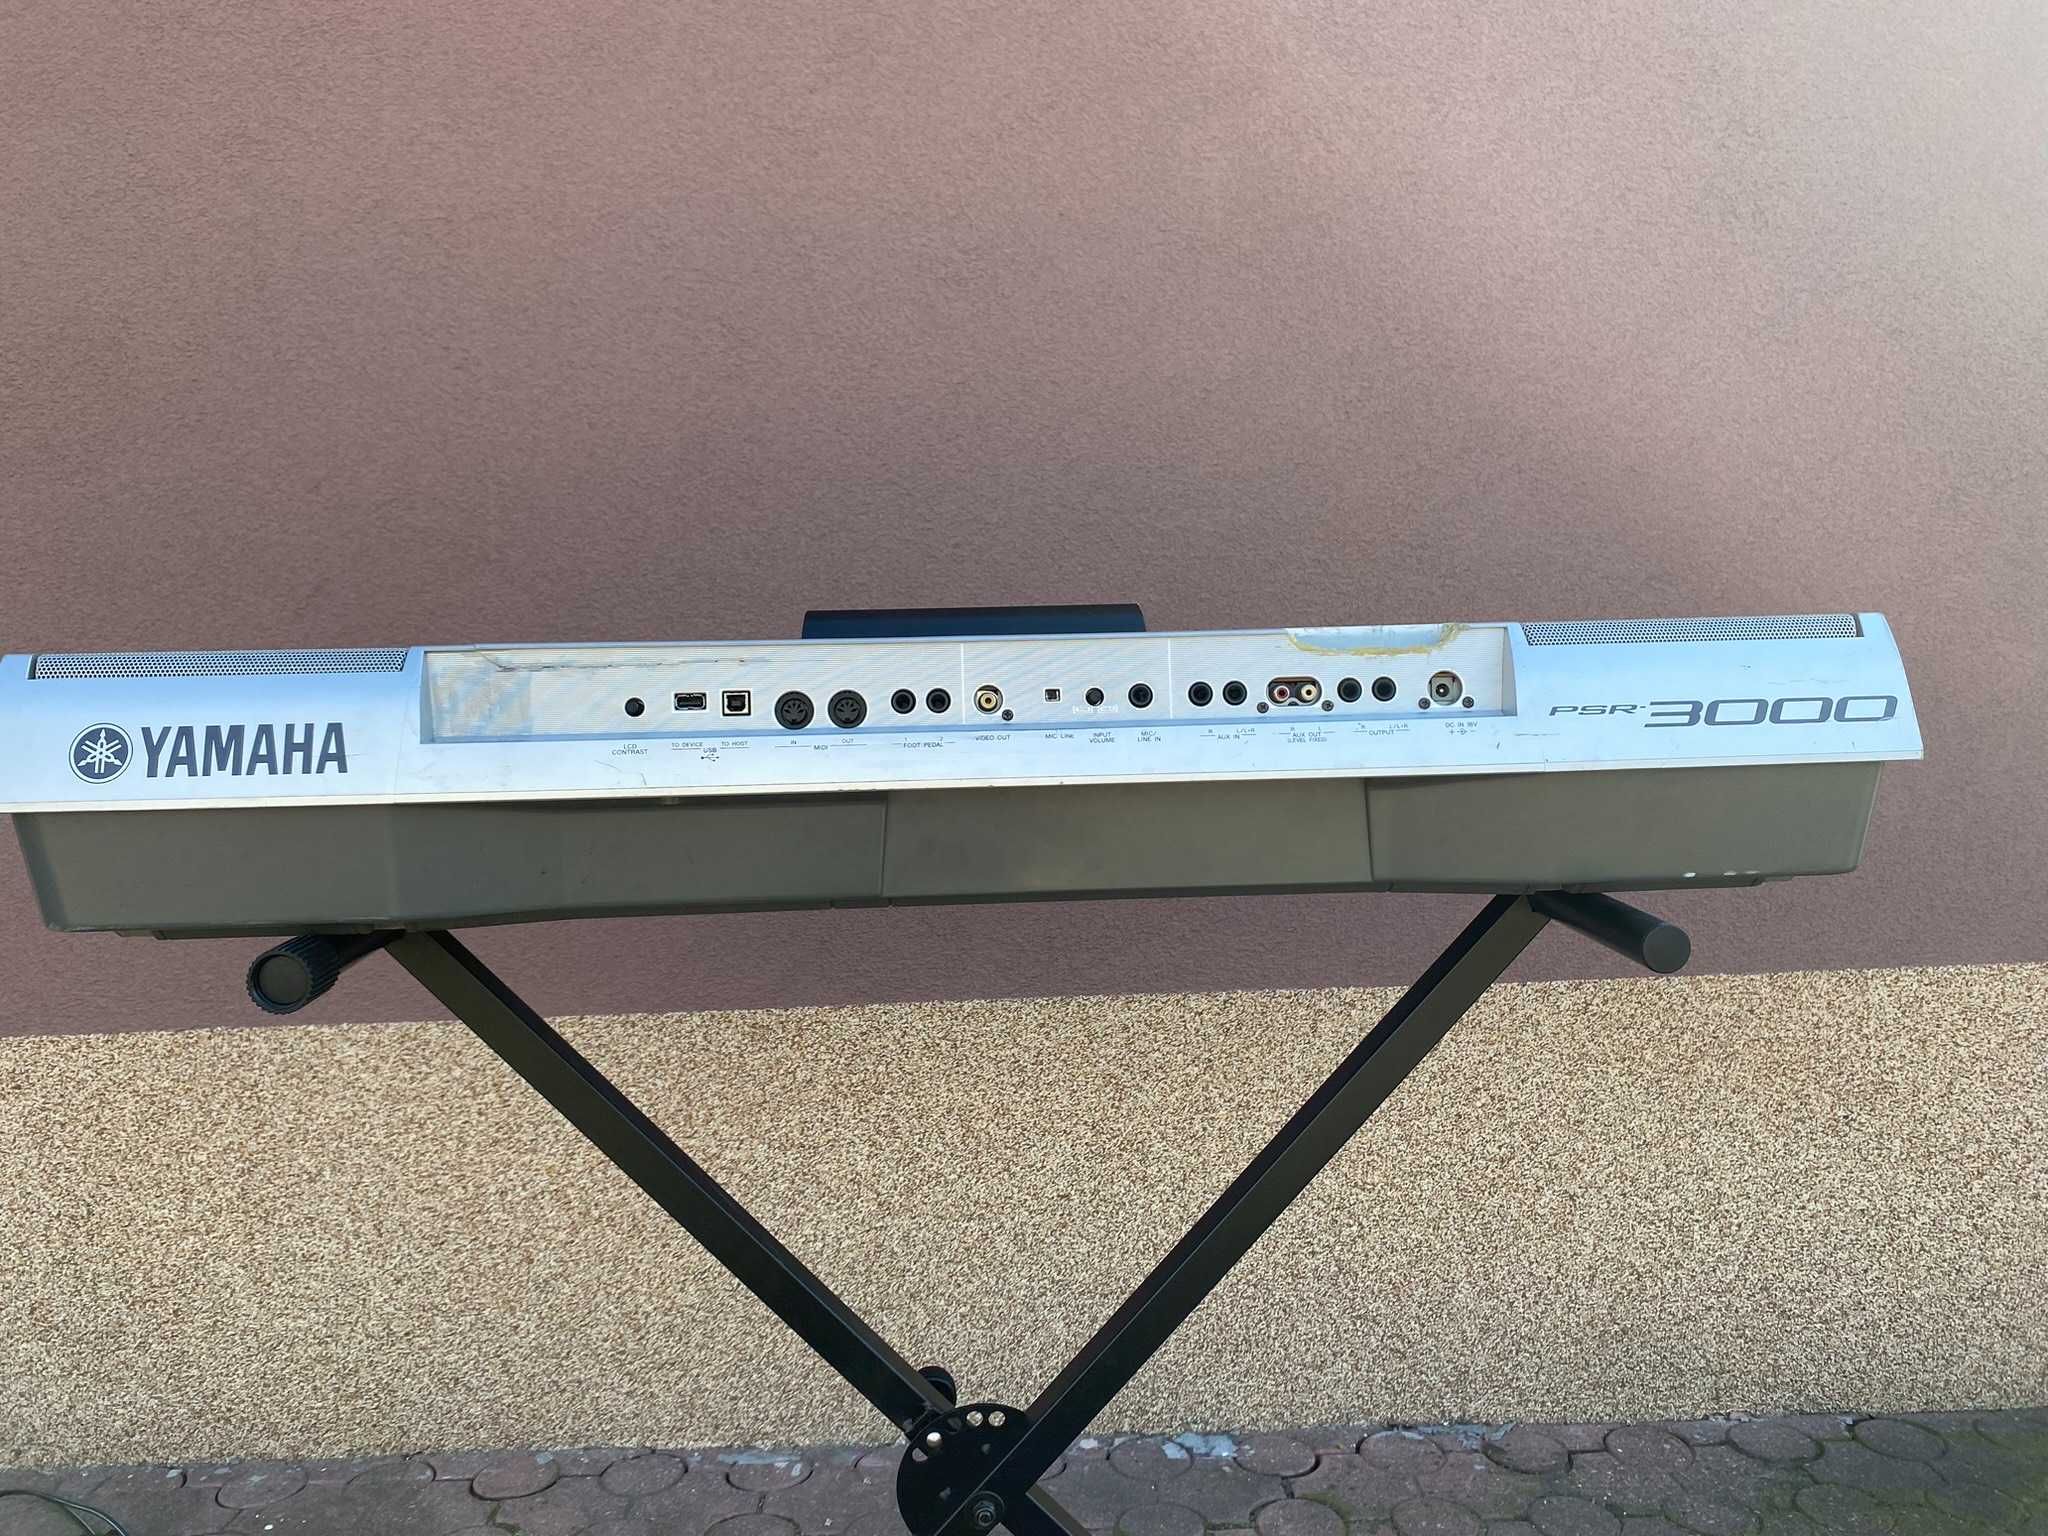 Keyboard Yamaha Psr 3000